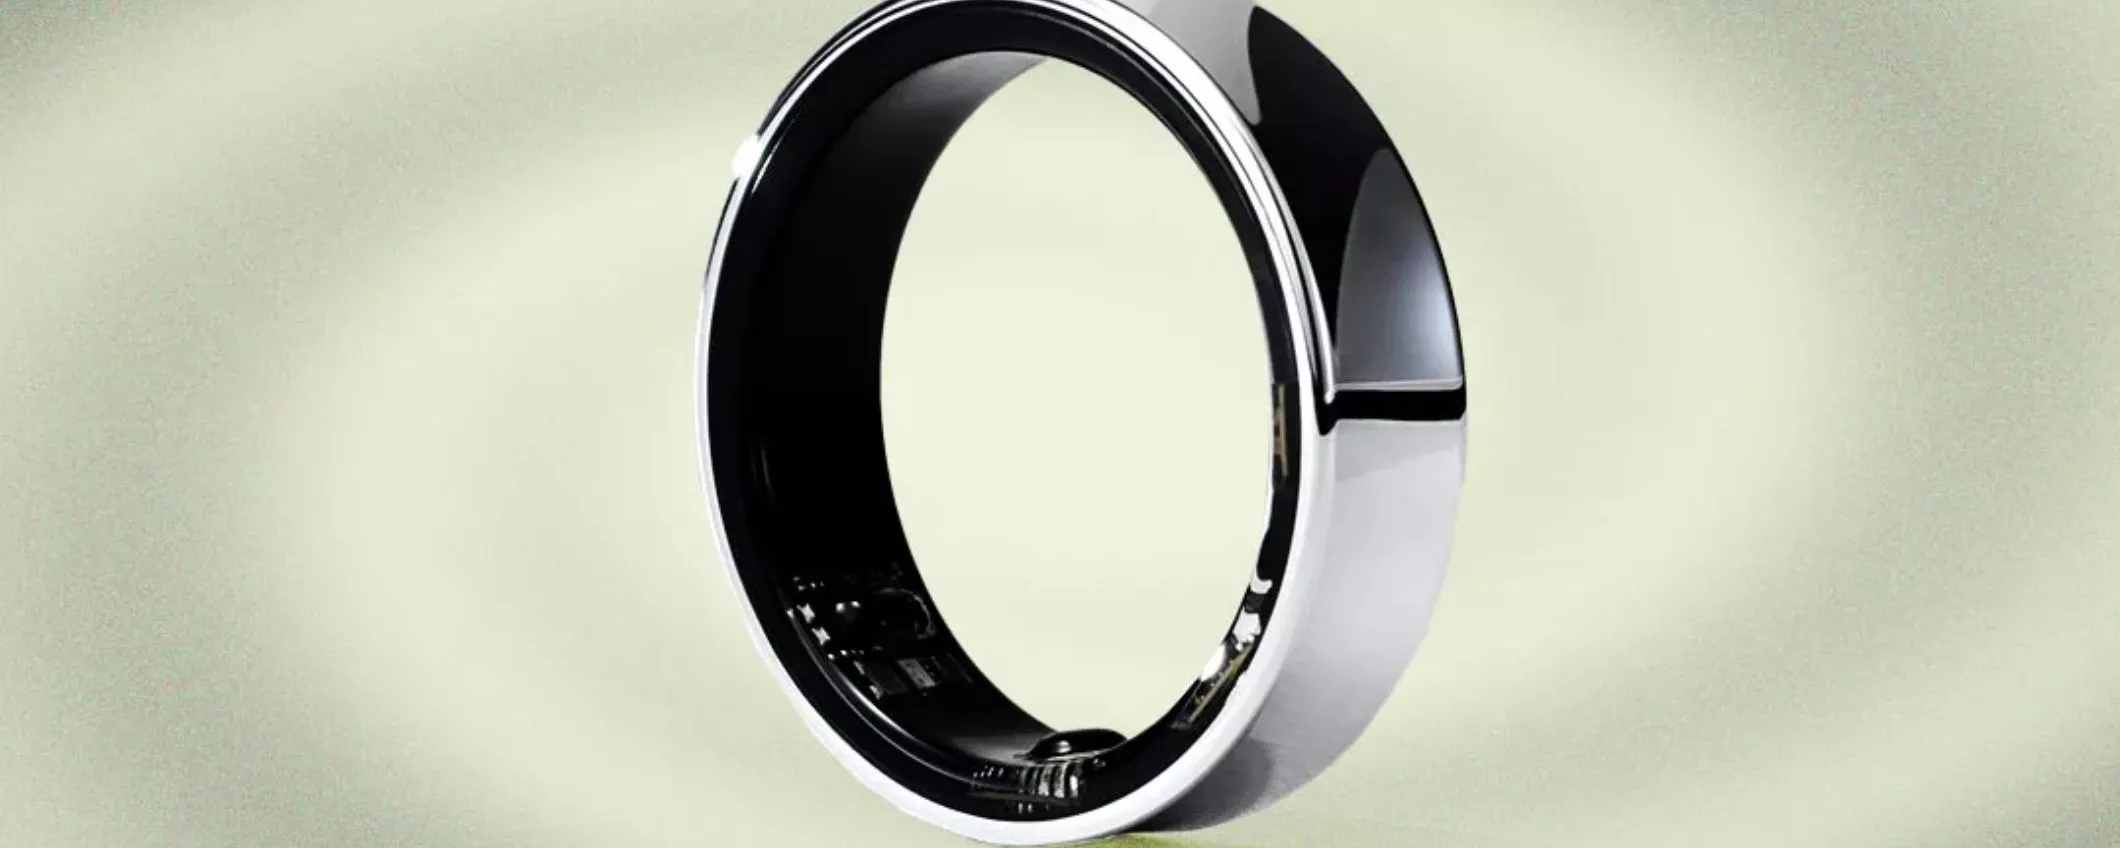 Galaxy Ring: lo comprerai al lancio o meglio aspettare?